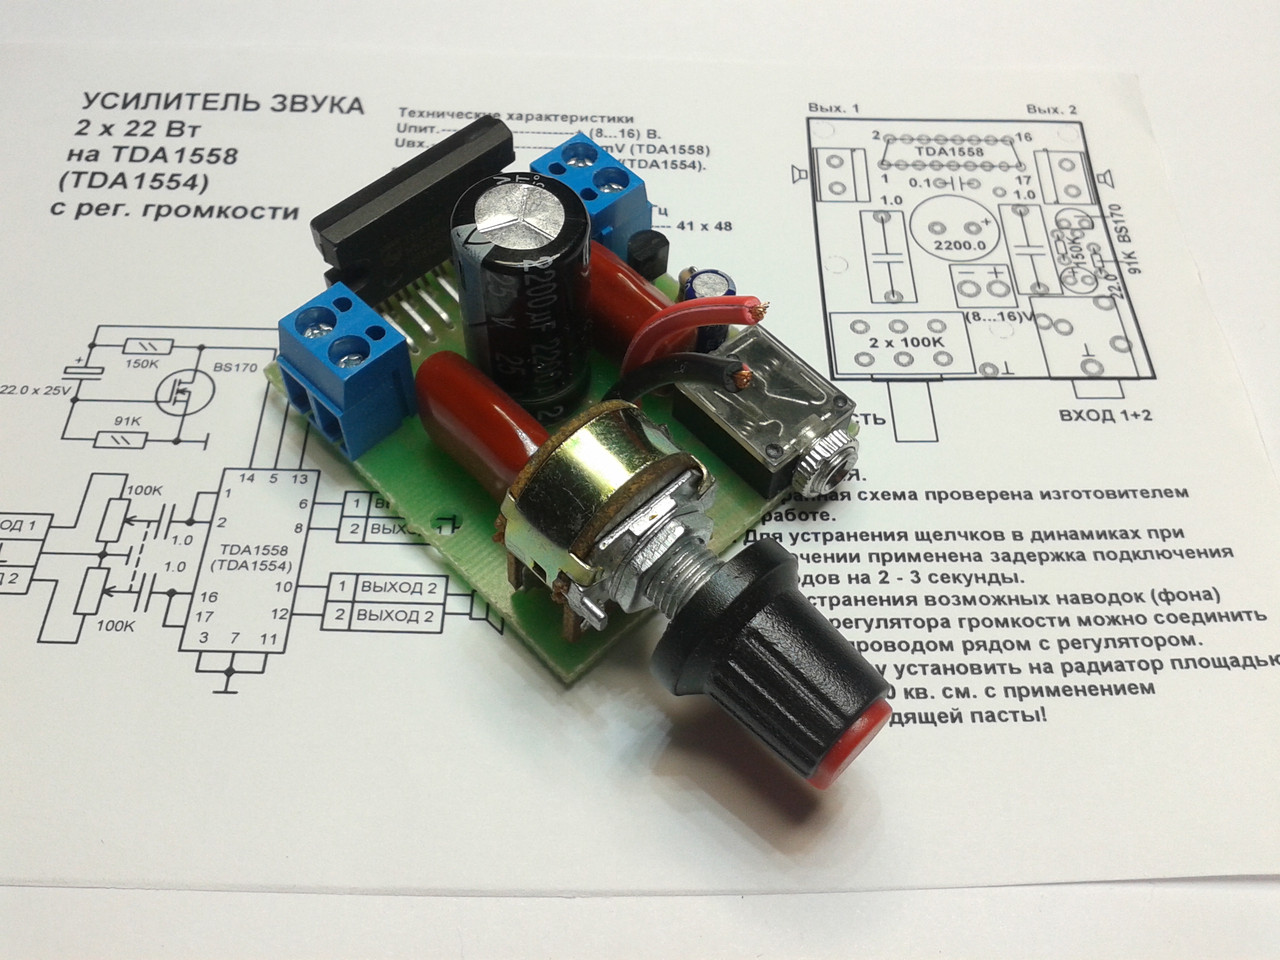 Стереопідсилювач на м/с TDA1558Q 2x22 Вт із регулятором гучності та затримкою увімкнення.